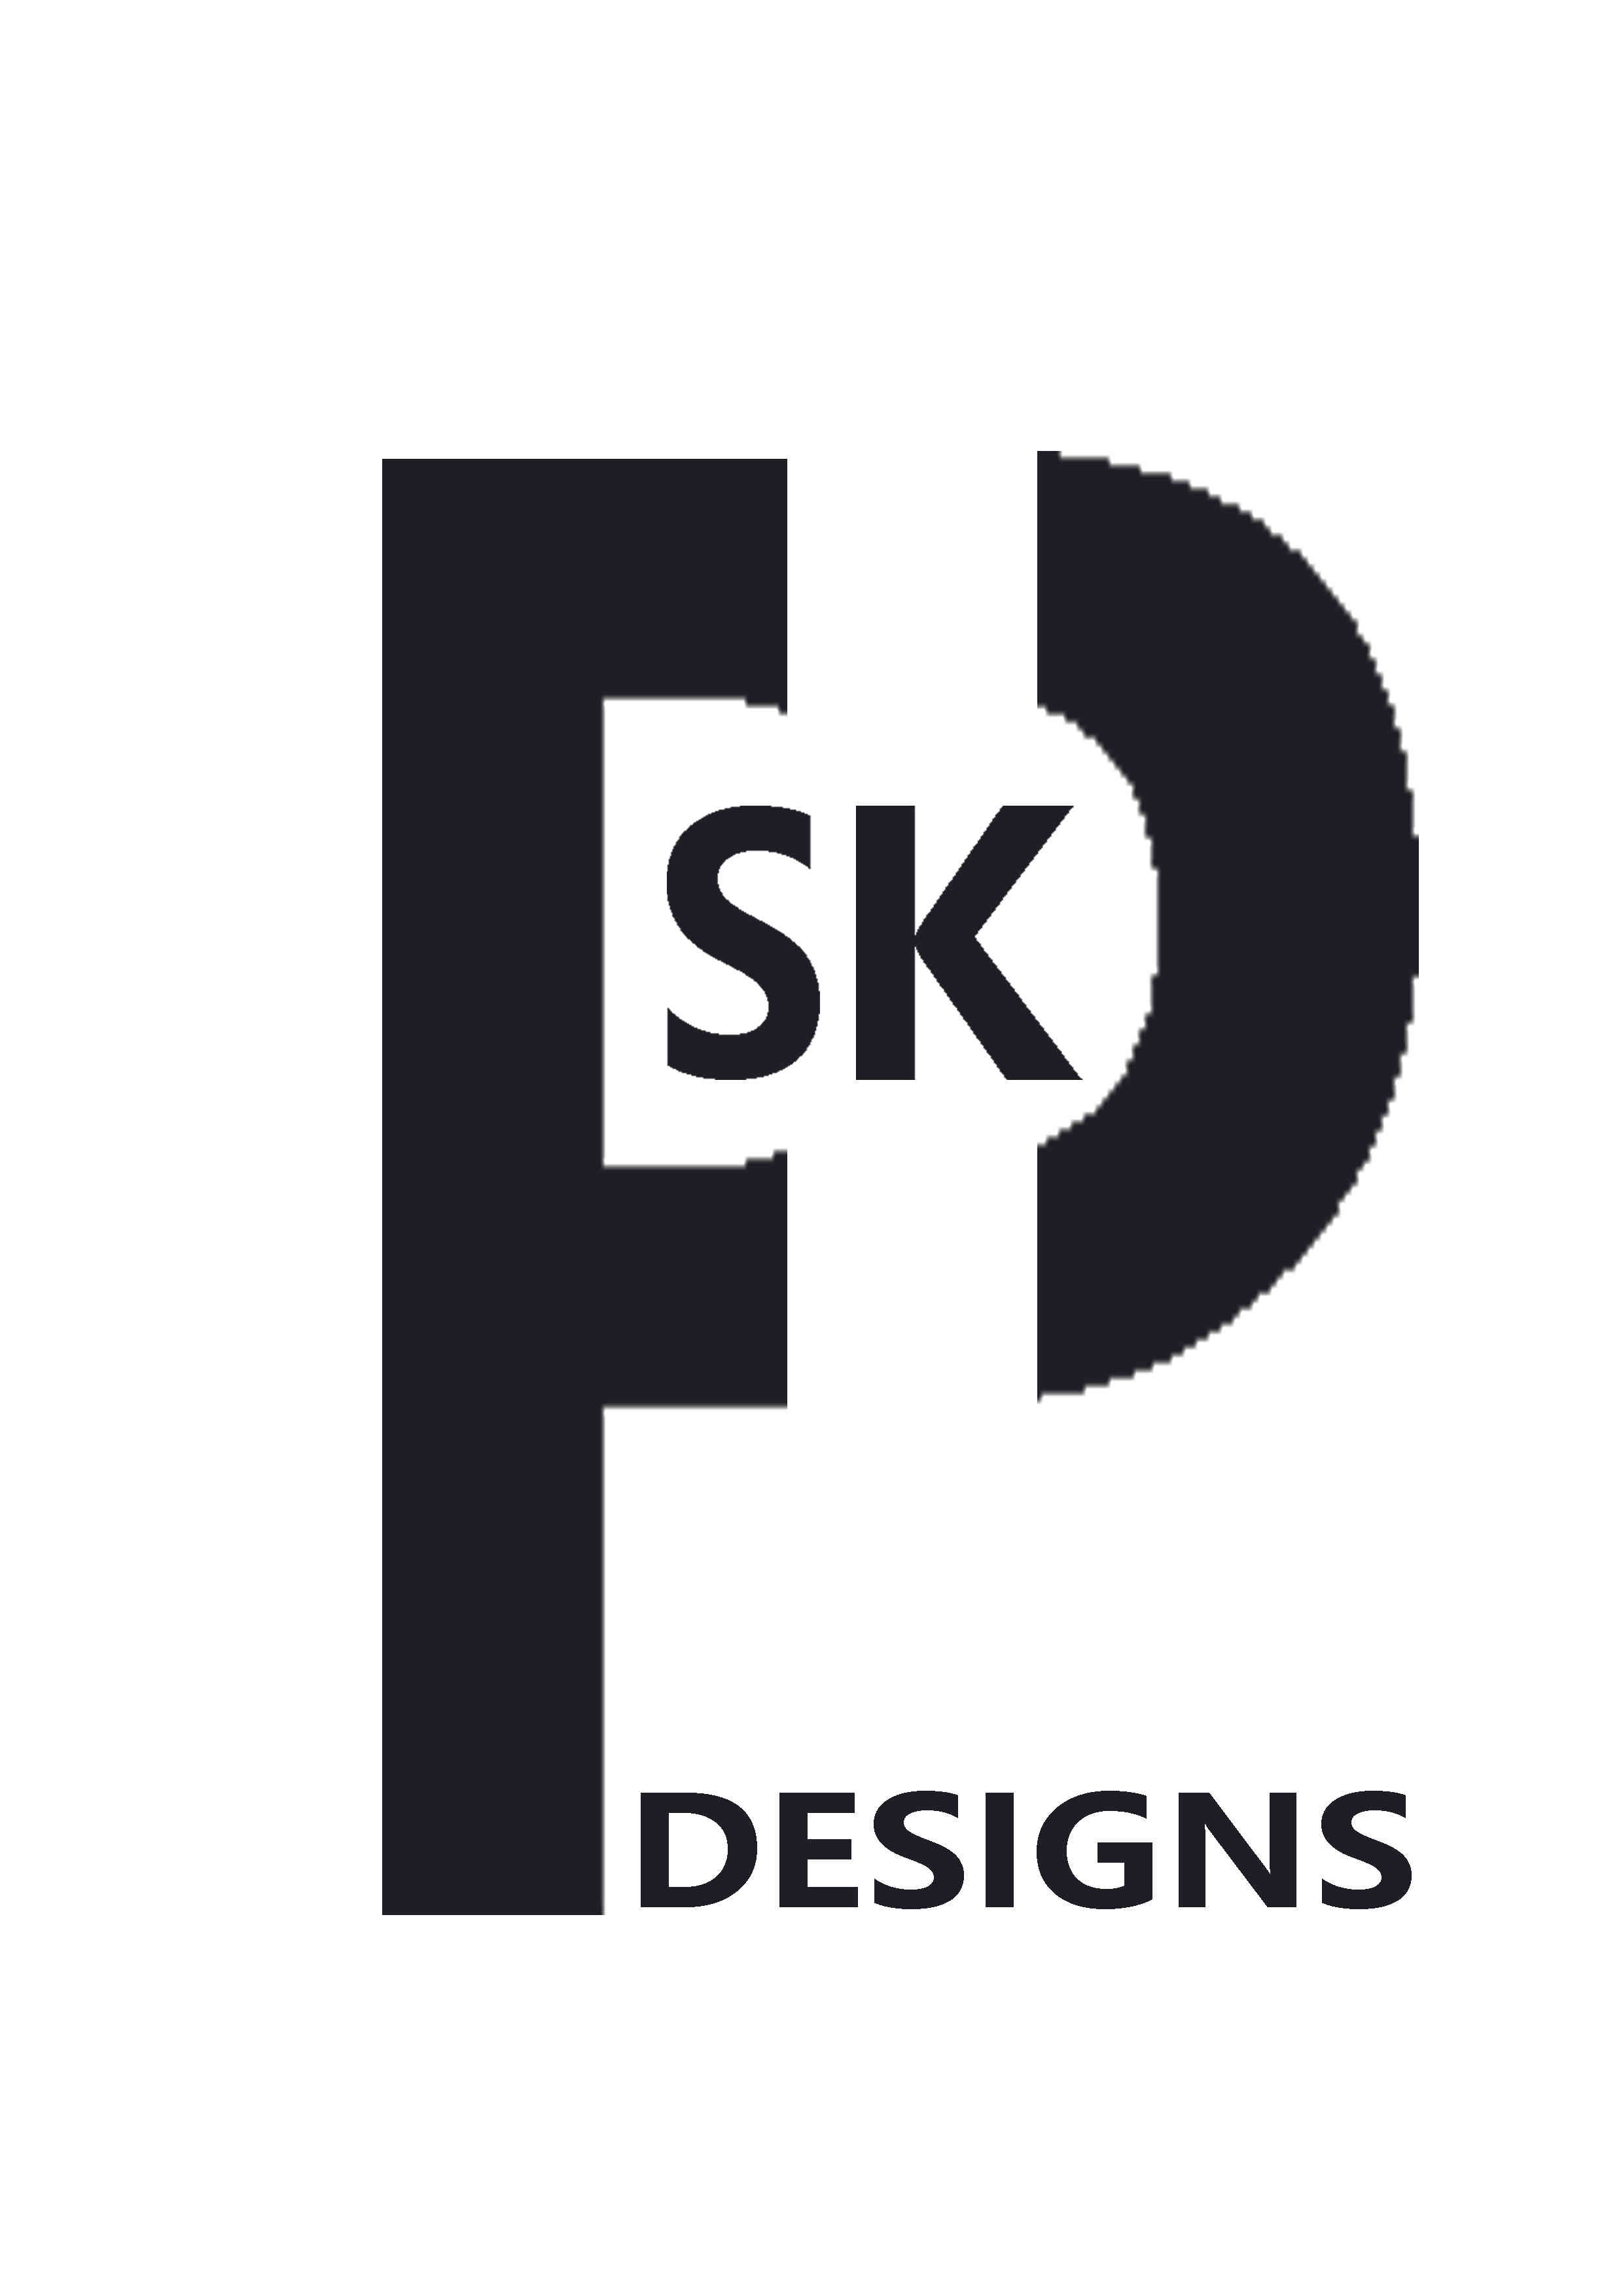 PSK Design